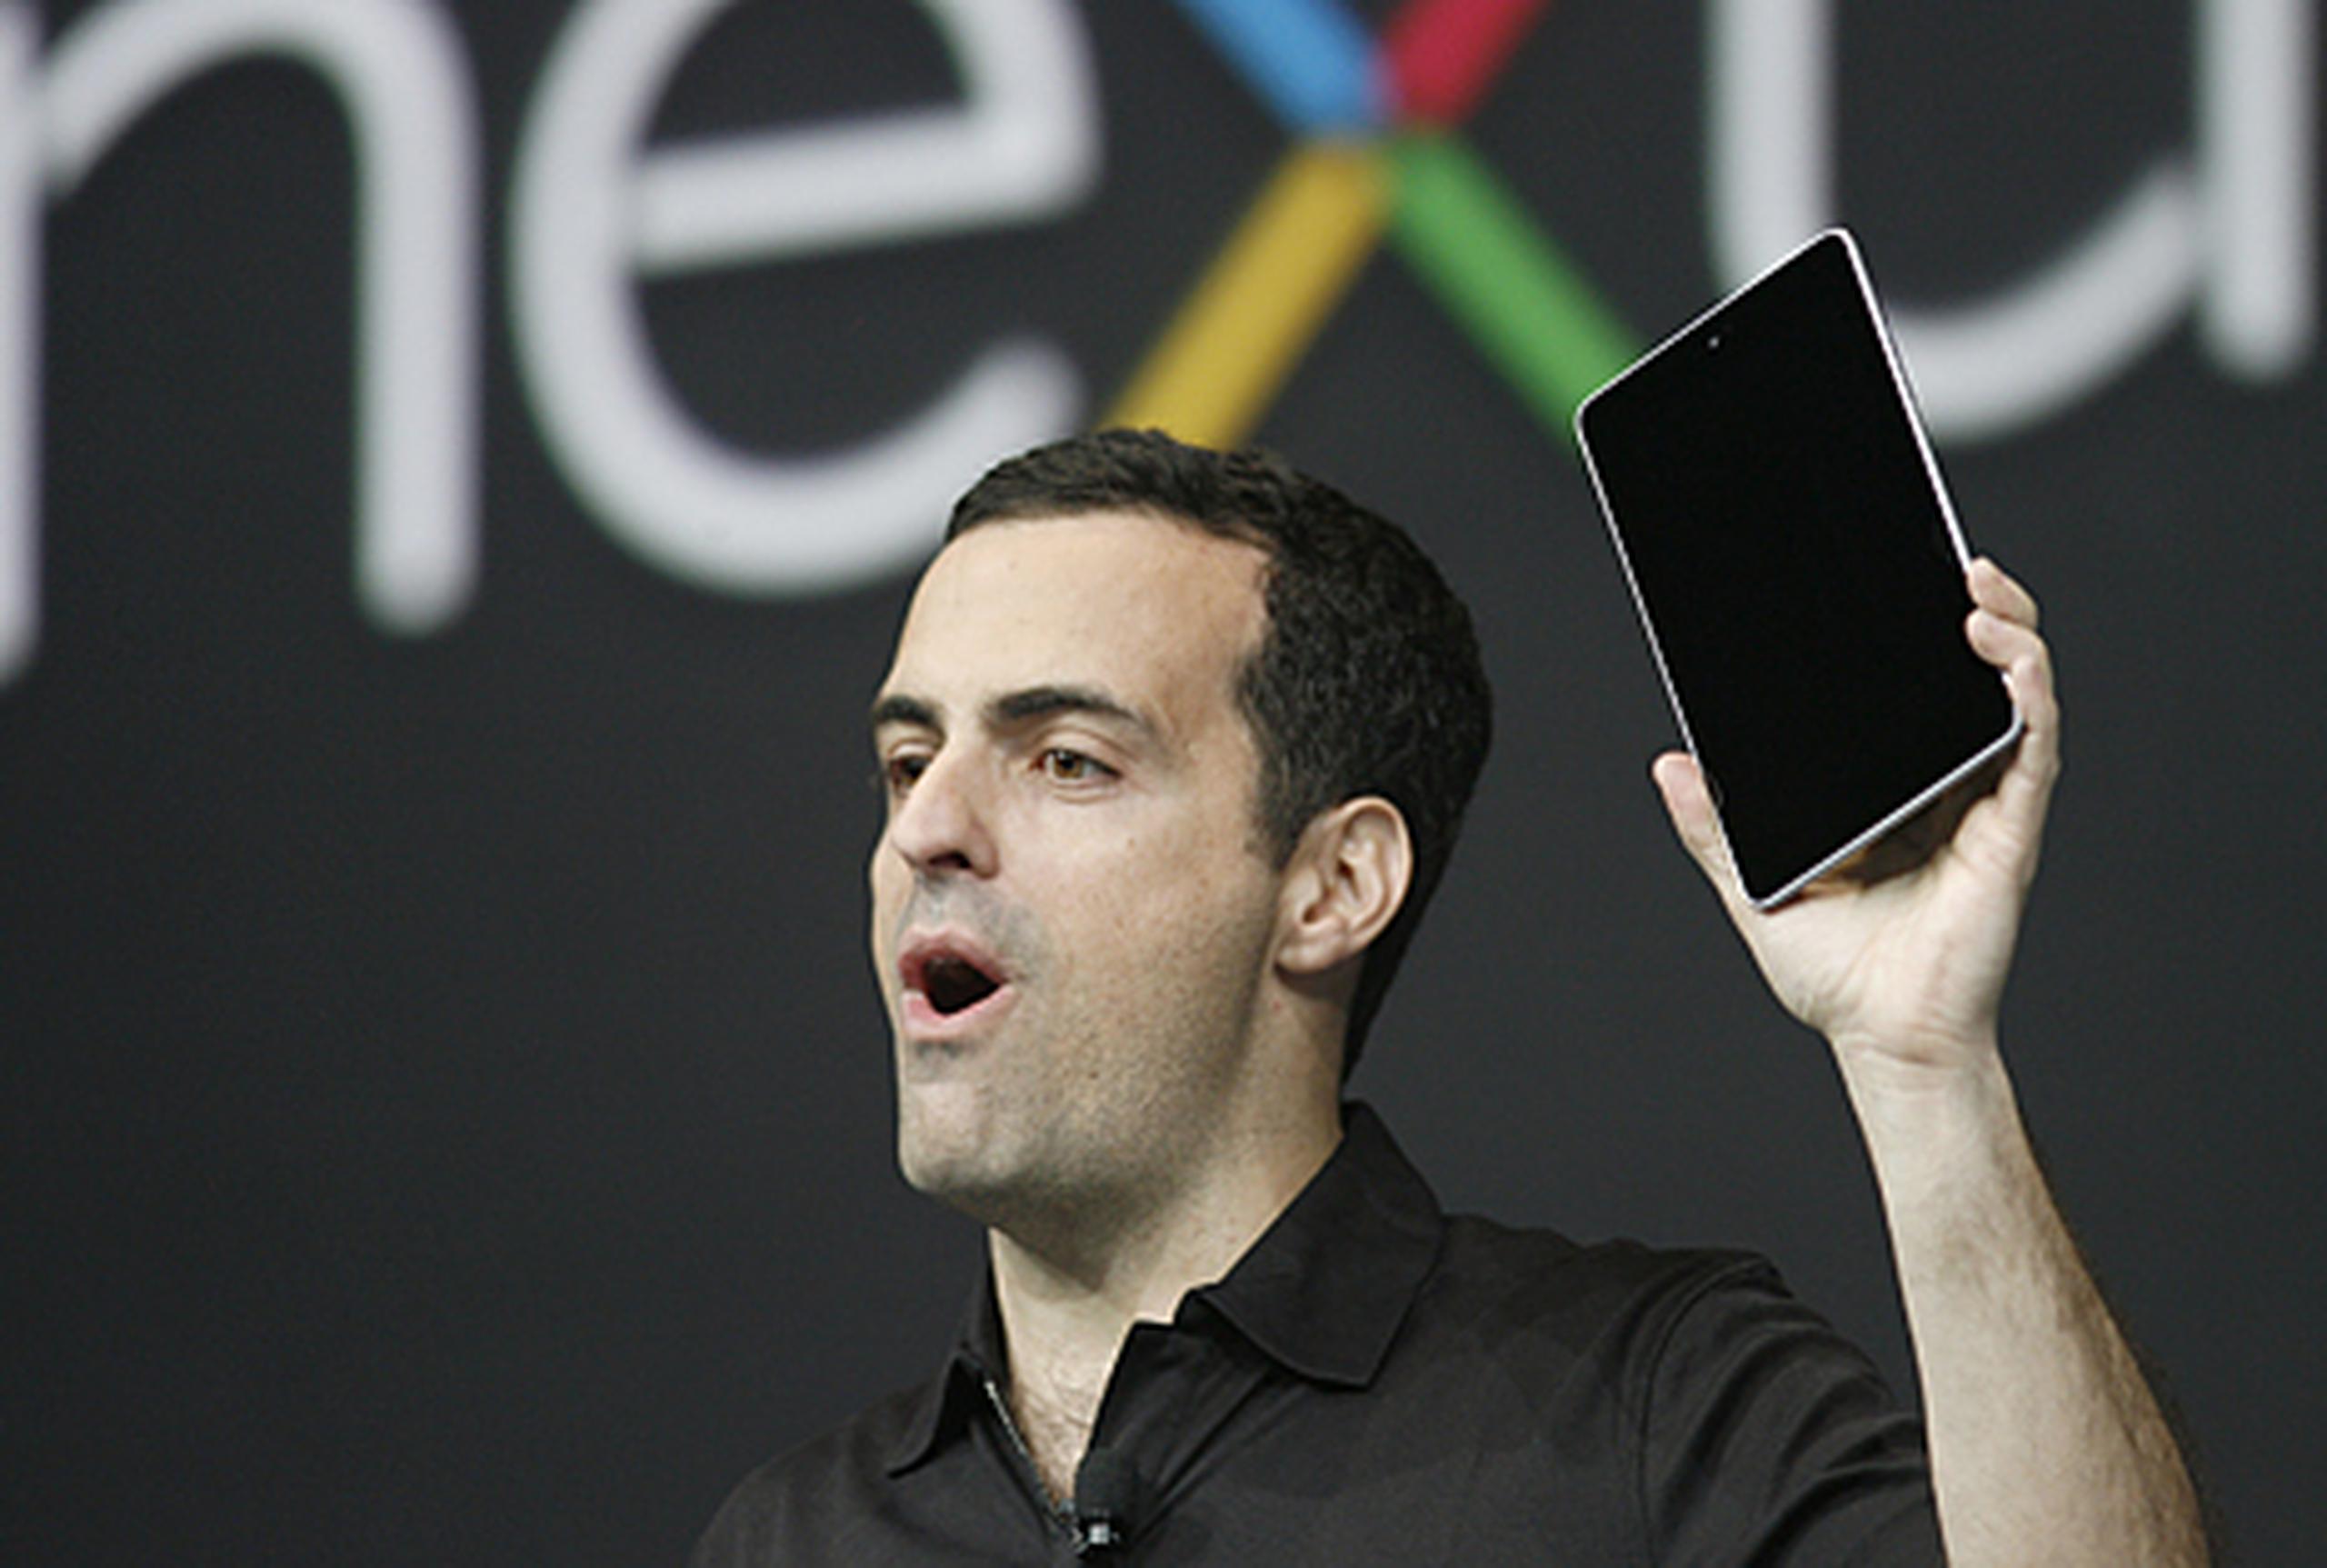 Hugo Barra, director de producto para Android, presenta la nueva Nexus 7 durante la conferencia Google I/O en Los Ángeles.(AFP)